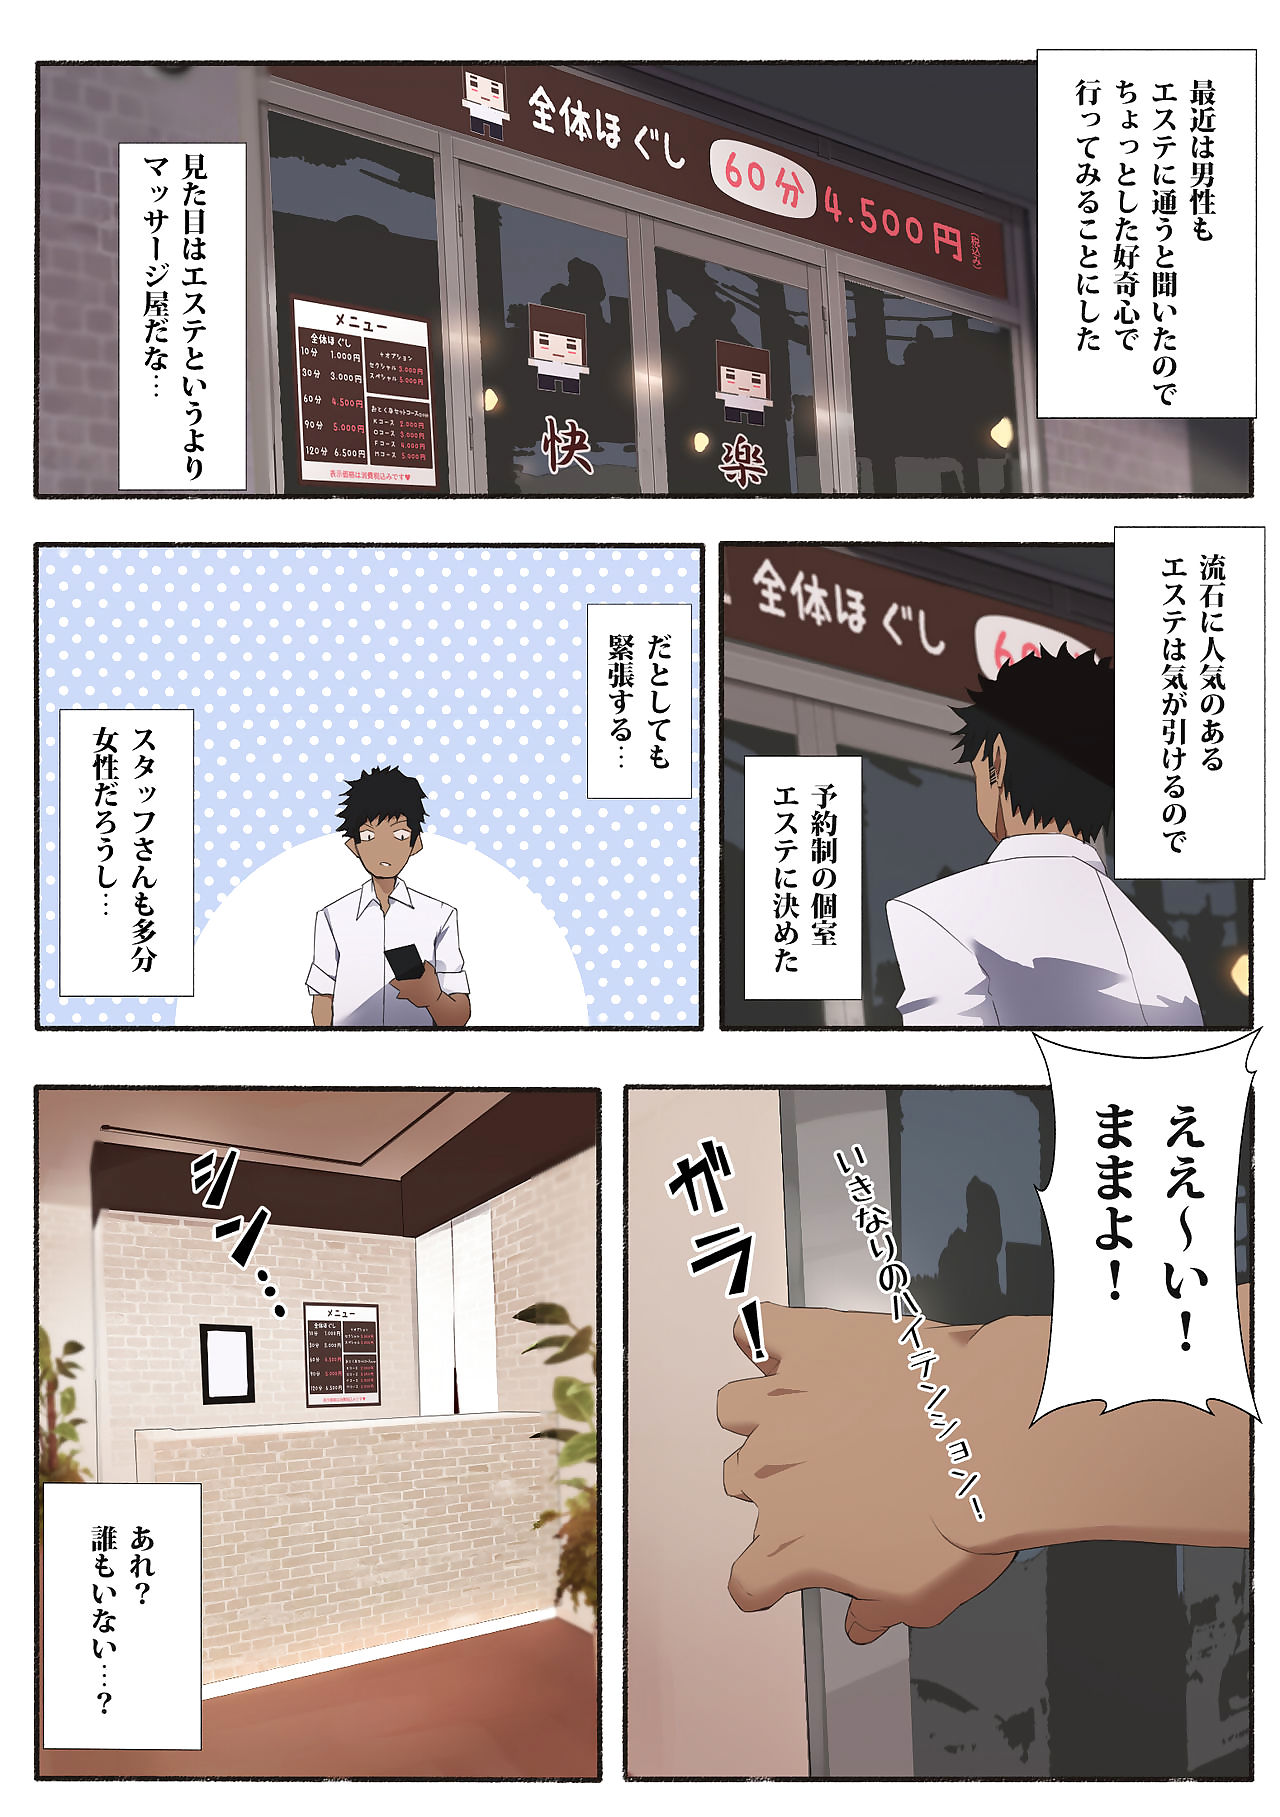 hataraku oneesan - कामुक सैलून page 1